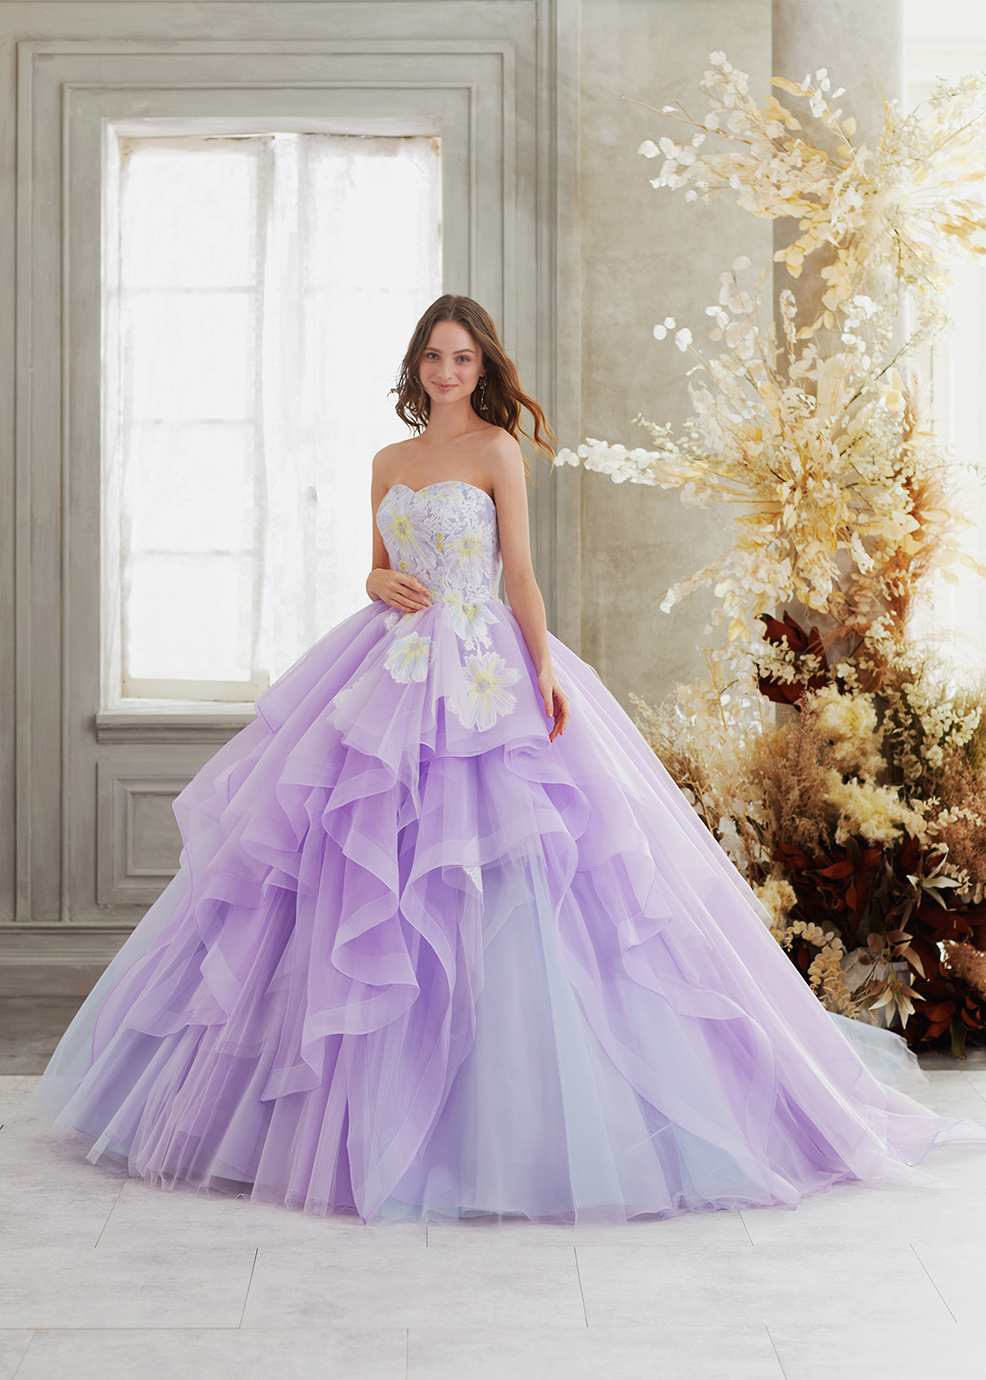 カラードレスウェディングドレス、かわいい花、3色入り、可愛い花びら、ウエディングドレス、ビスチェタイプ、極めて豪華、可愛い姫系